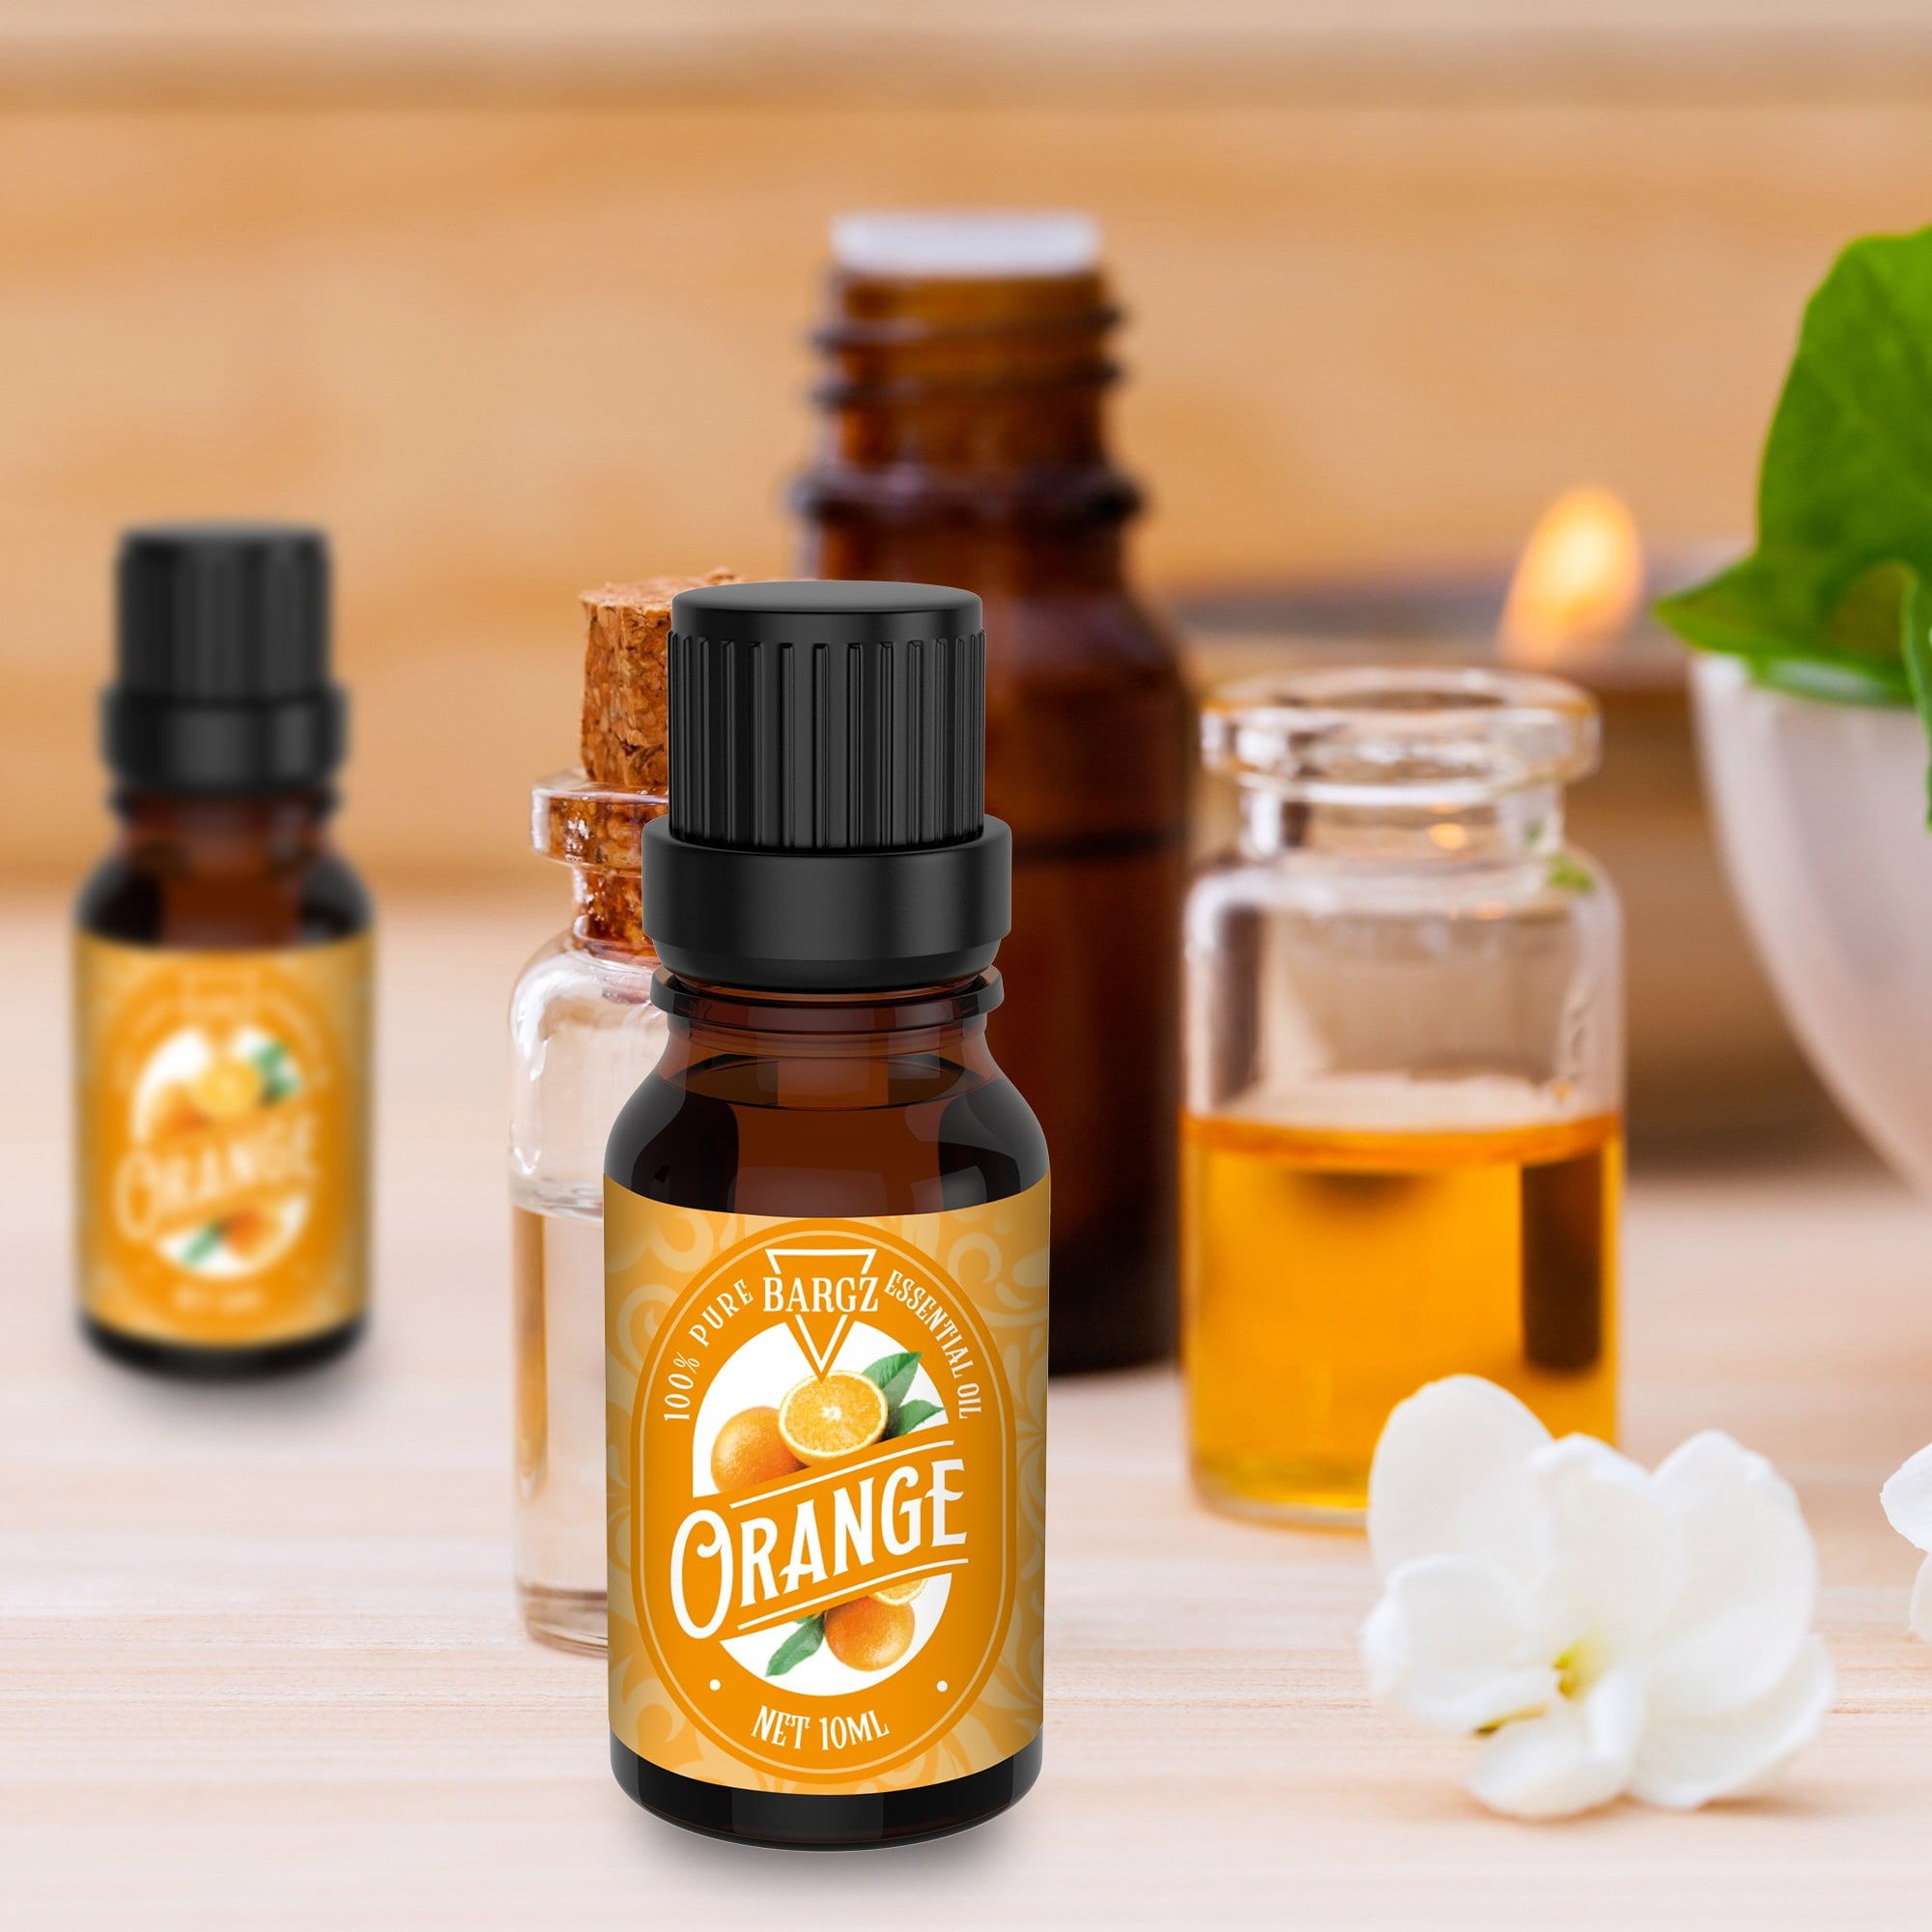 Benefits of Using Orange Essential Oil